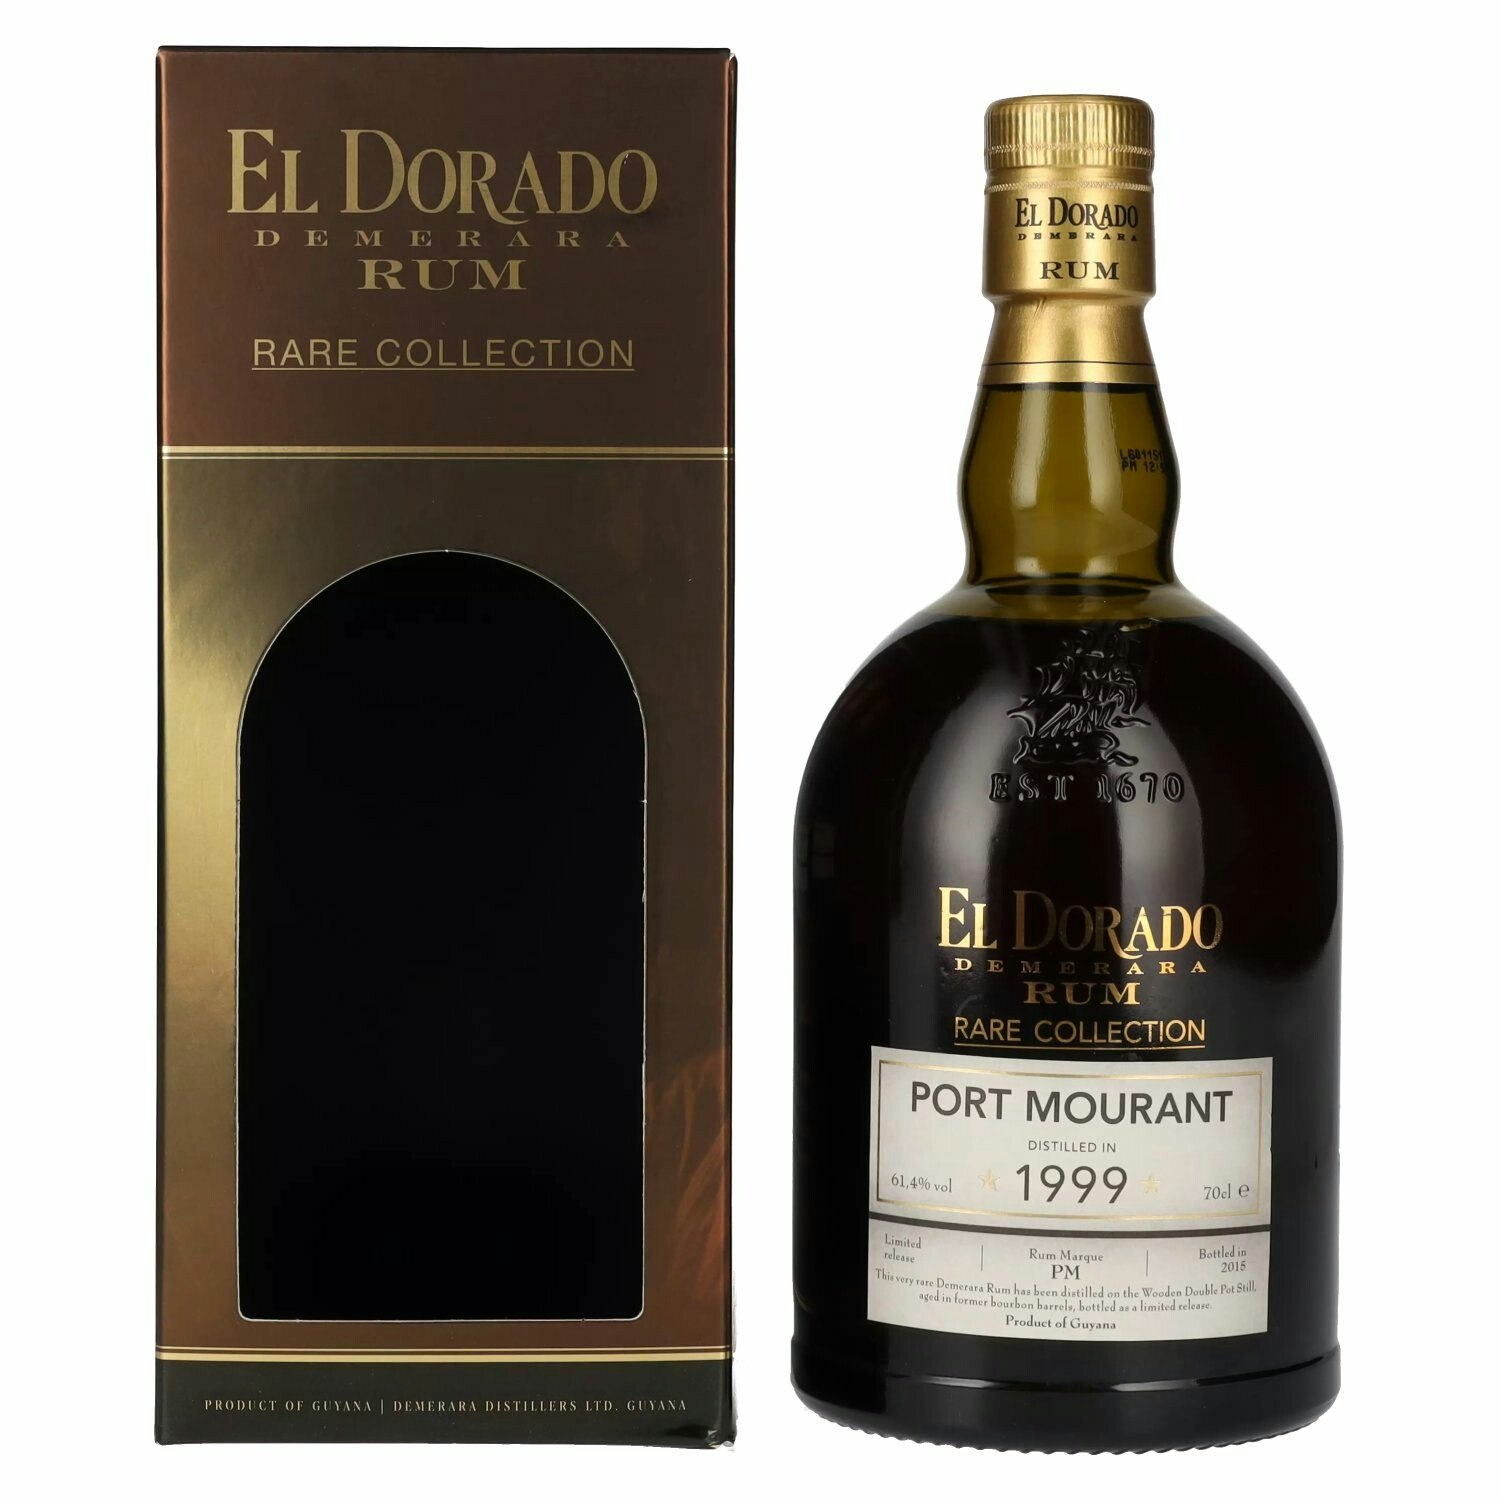 El Dorado PORT MOURANT Demerara Rum RARE COLLECTION Limited Release 1999 61,4% Vol. 0,7l in Giftbox